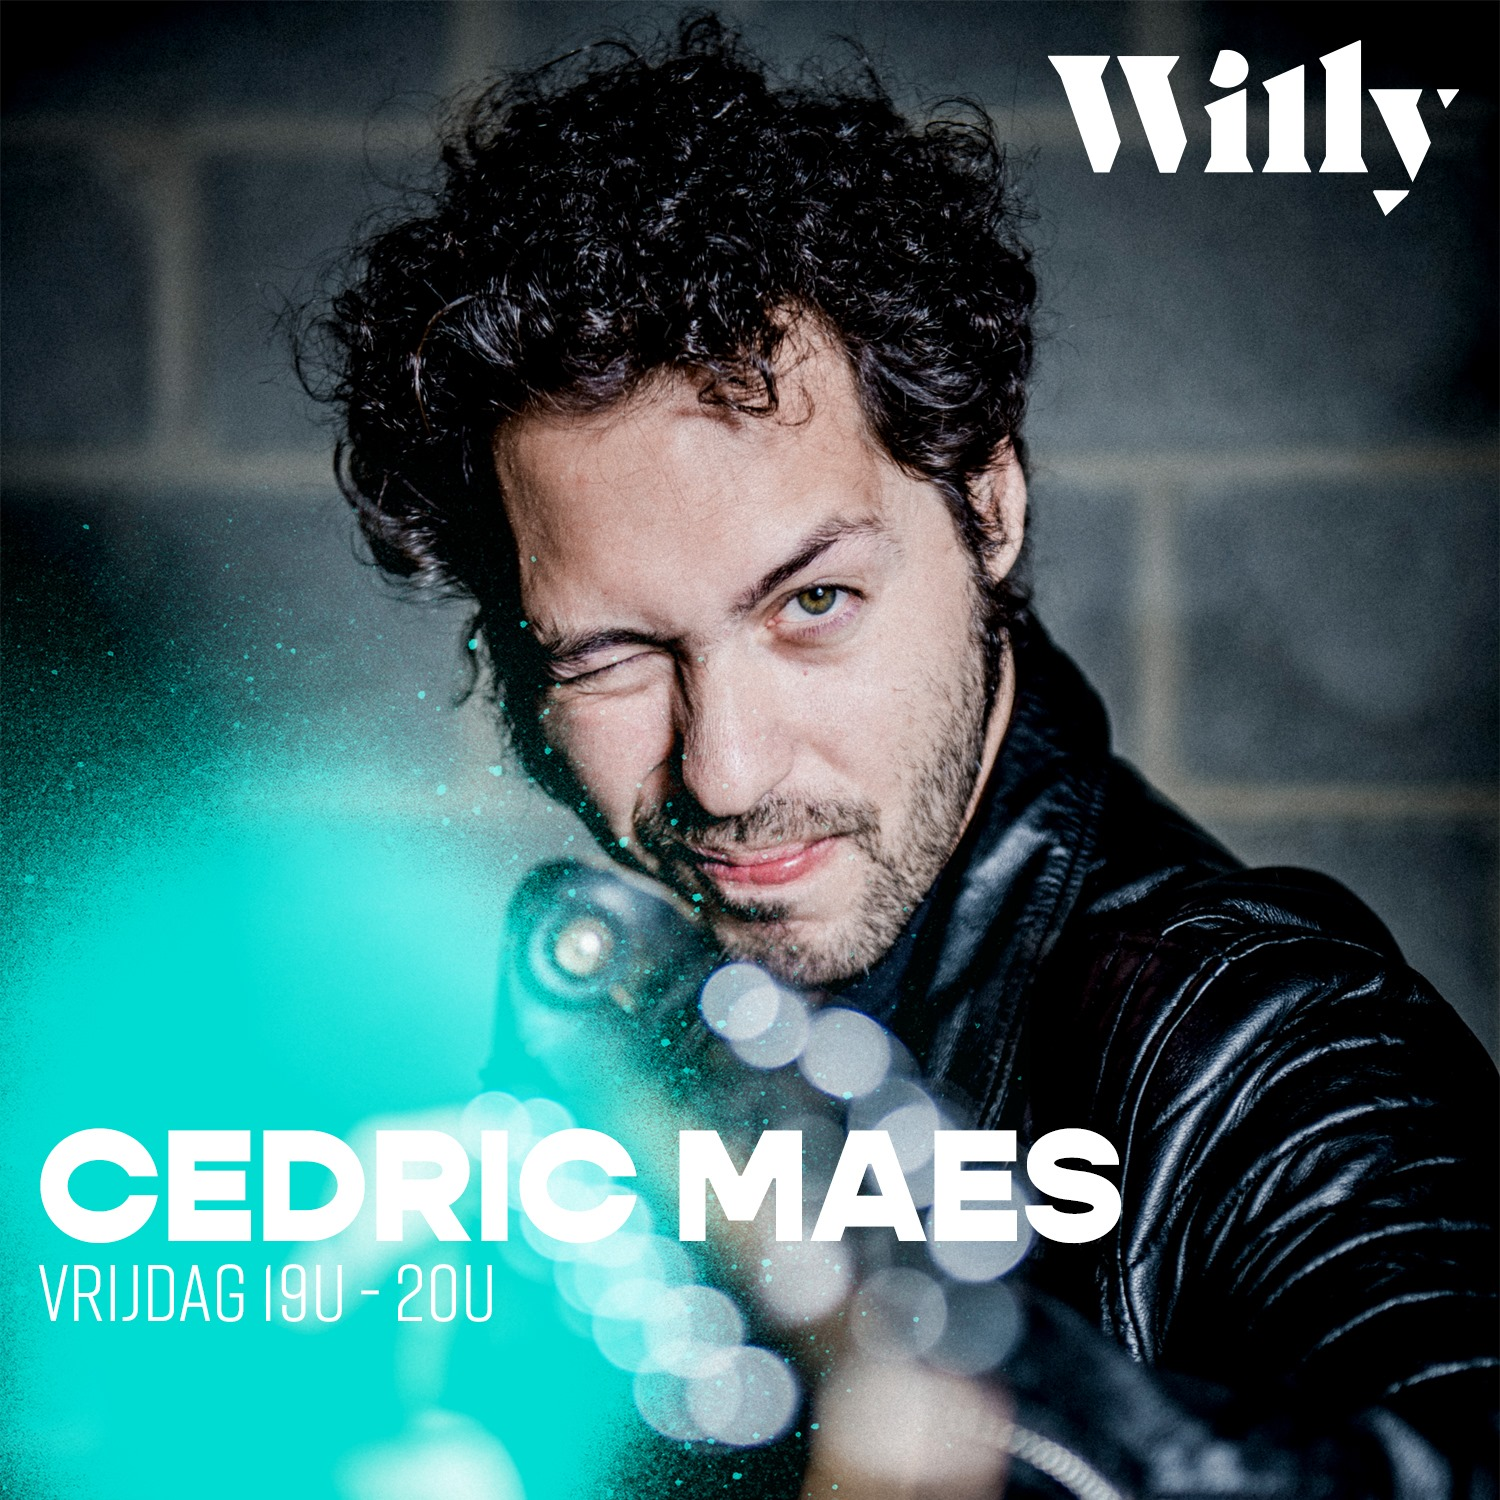 The Best Songs In The World met Cedric Maes (12/06, 18u)